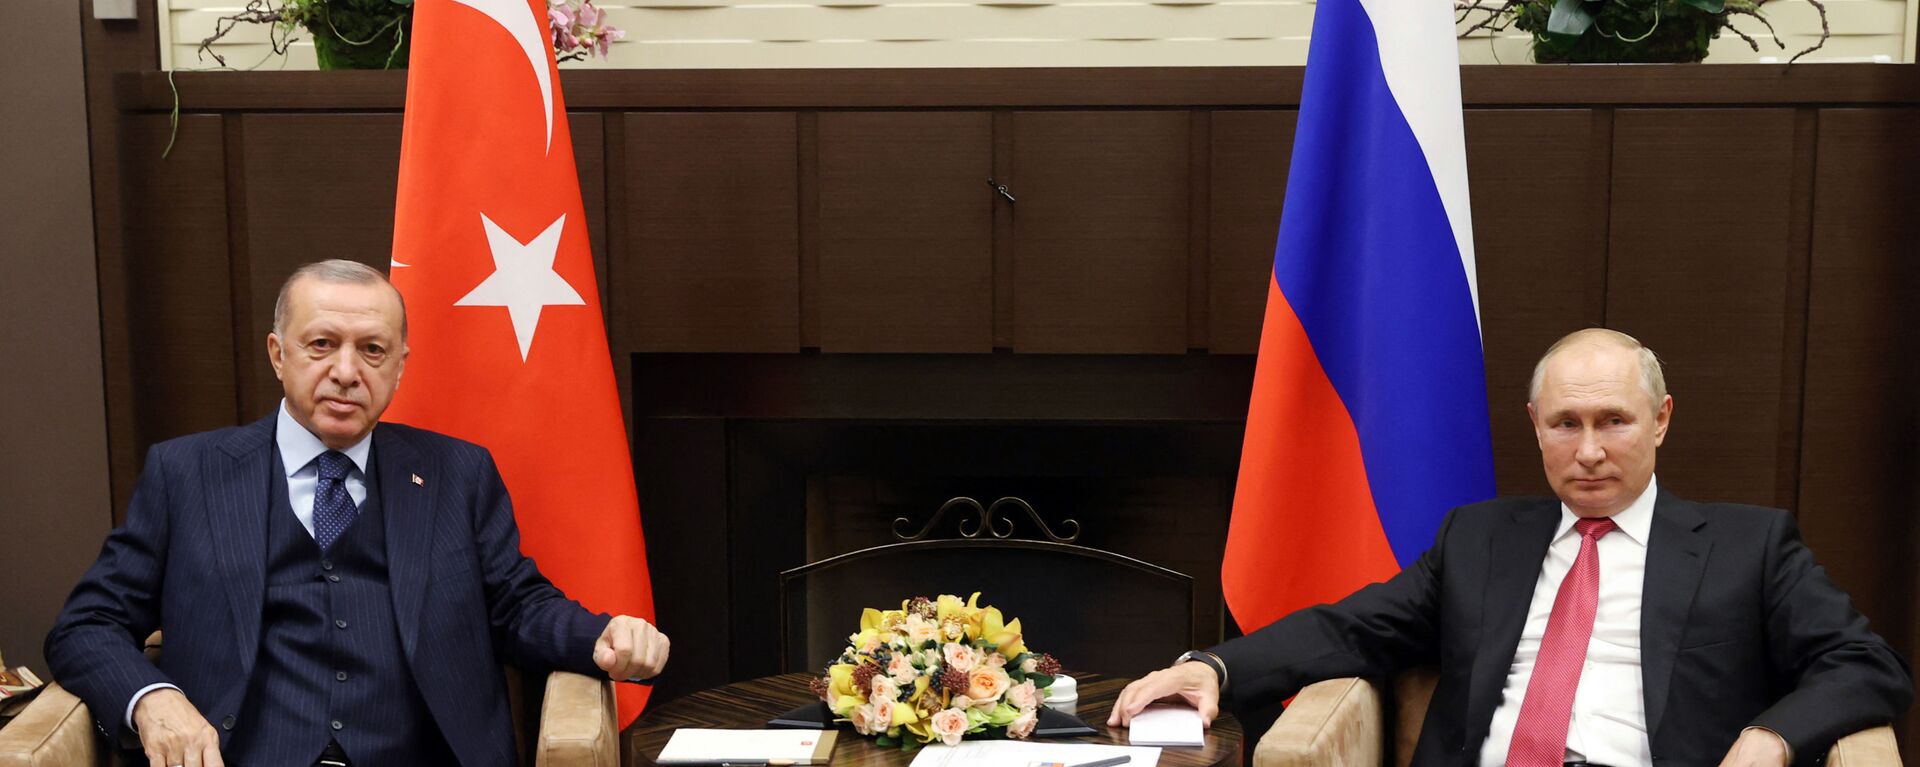 Tổng thống Nga Vladimir Putin tại cuộc gặp người đồng cấp Thổ Nhĩ Kỳ Tayyip Erdogan ở Sochi - Sputnik Việt Nam, 1920, 22.05.2022